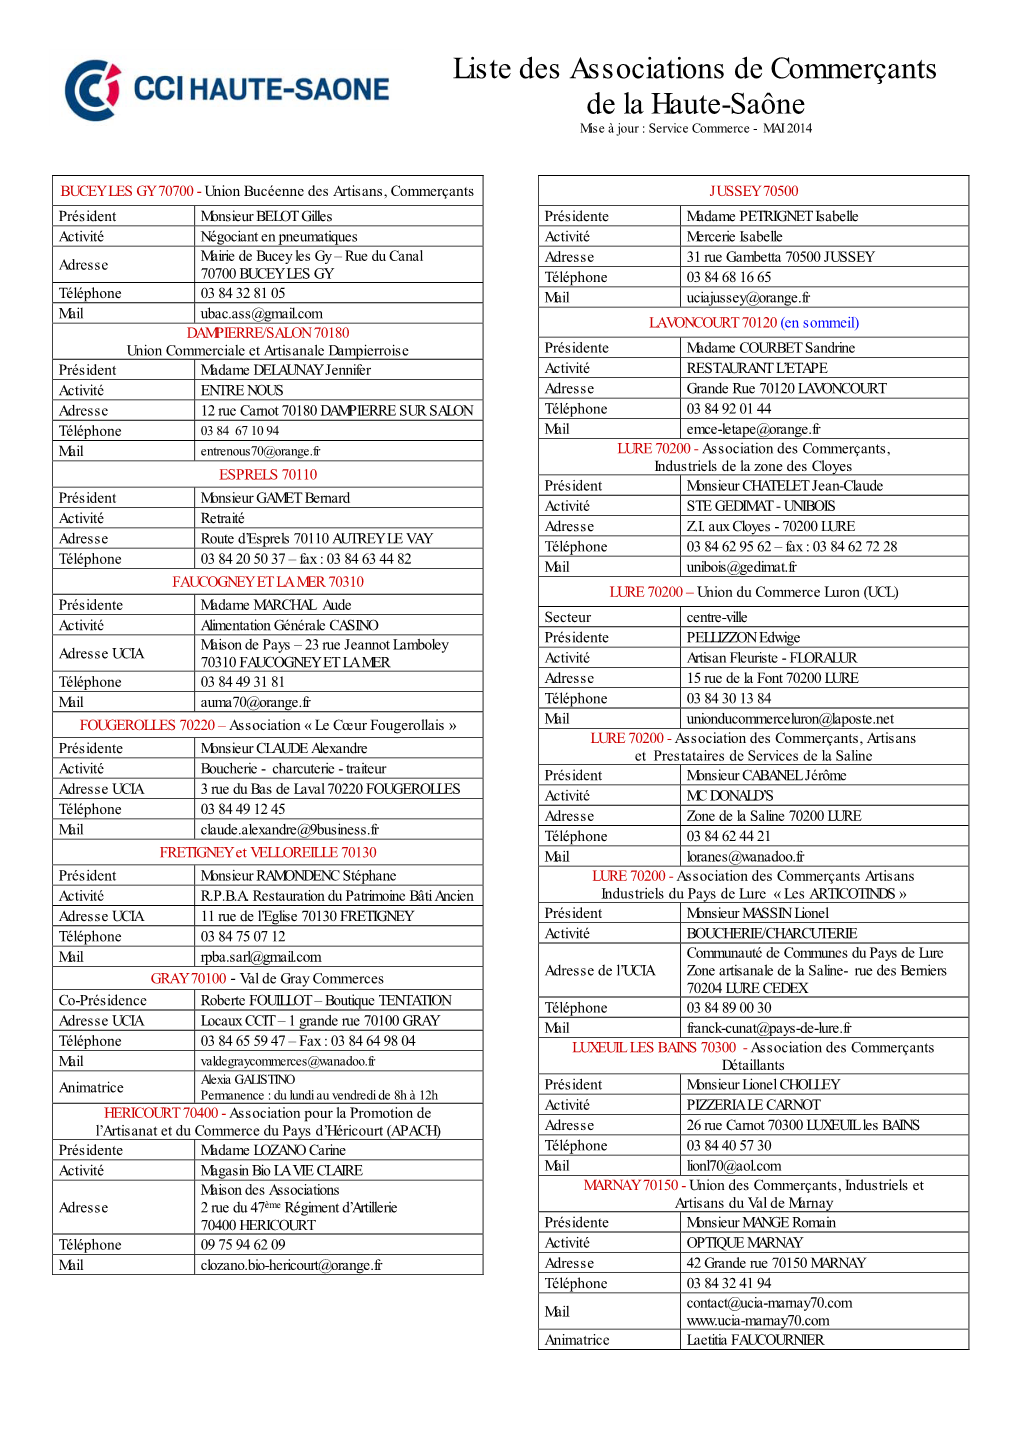 Liste Des Associations De Commerçants De La Haute-Saône Mise À Jour : Service Commerce - MAI 2014